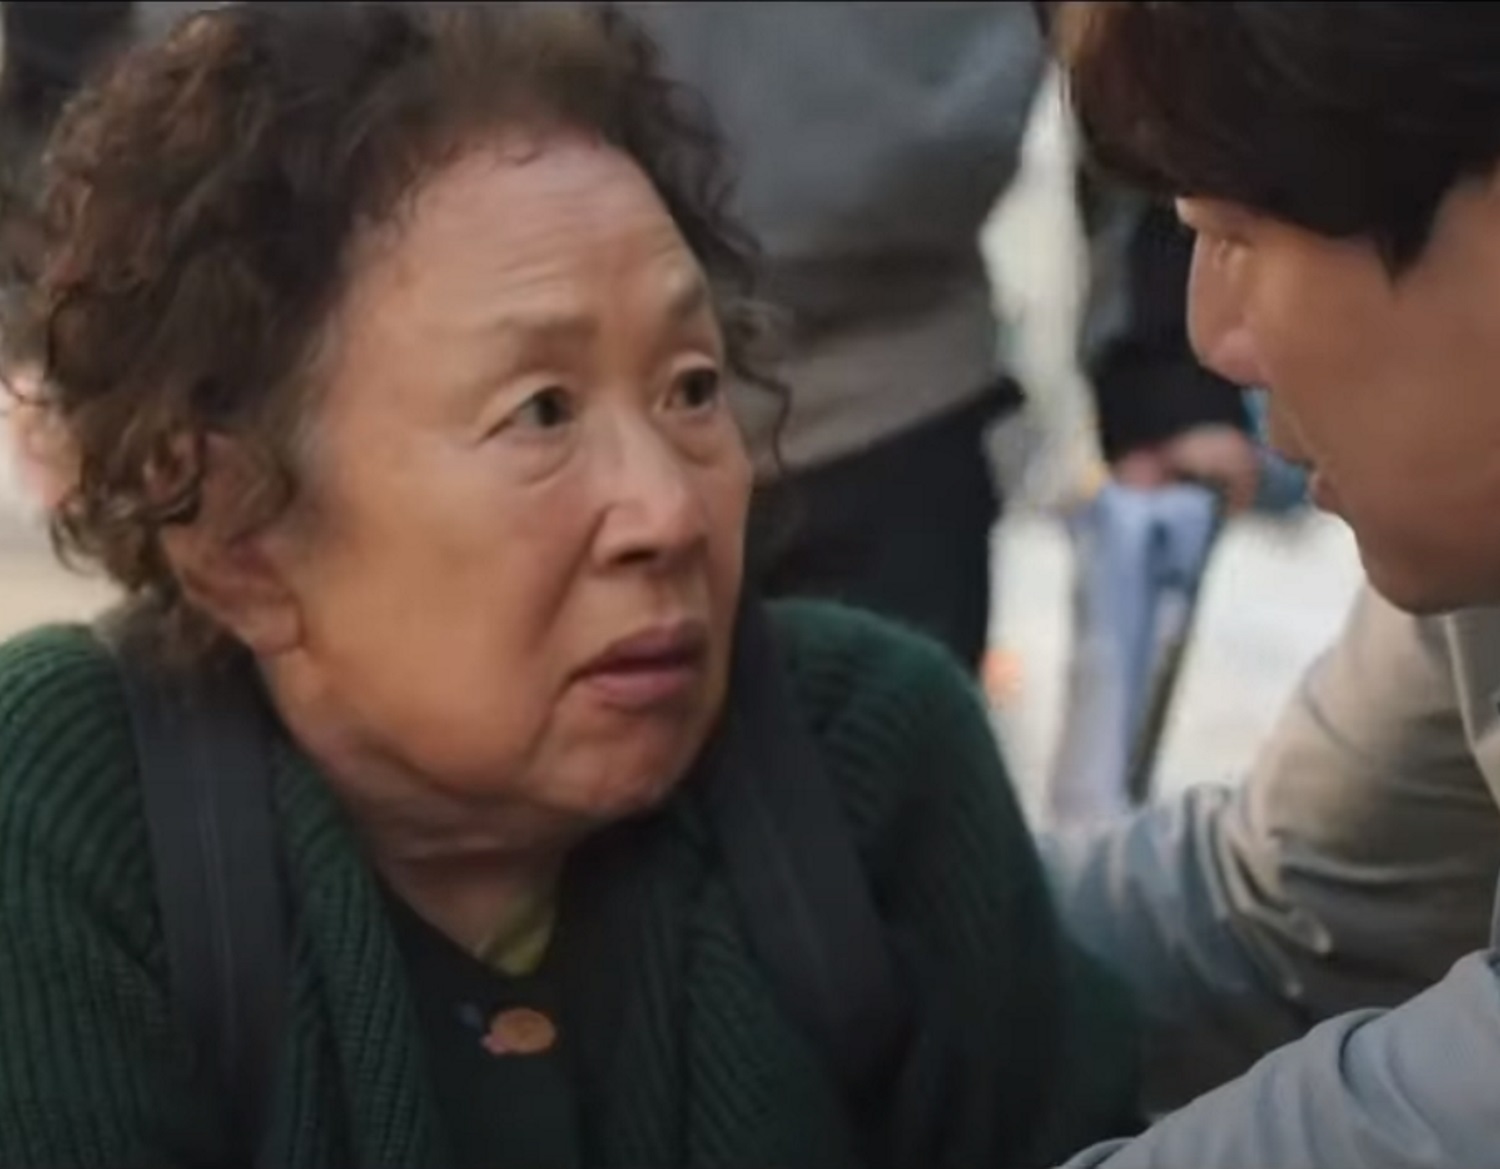 Η Κίνα επιτρέπει την προβολή κορεατικής ταινίας πρώτη φορά μετά από έξι χρόνια